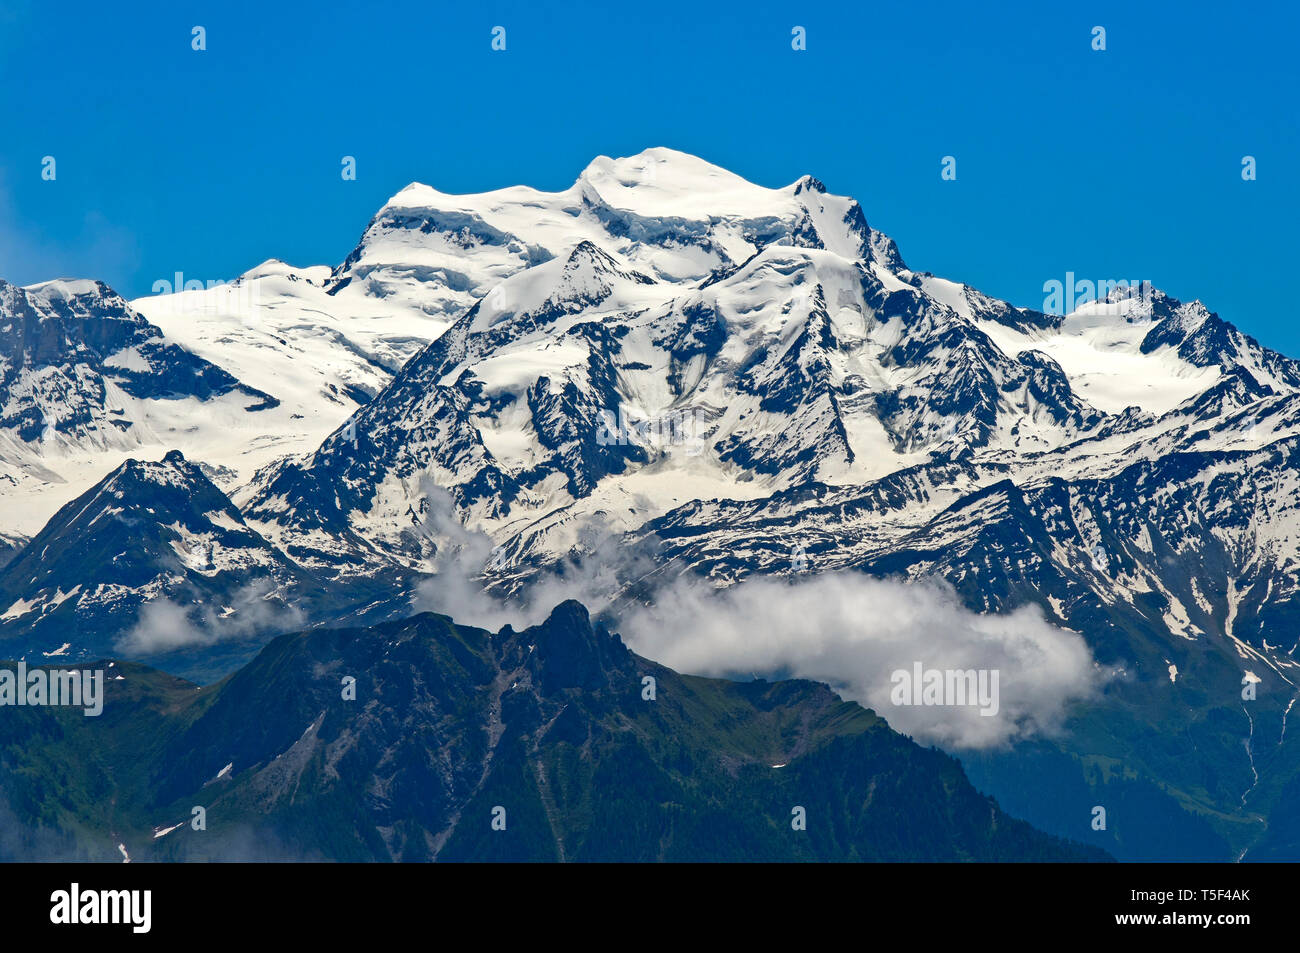 La neige Grand Combin massif, Alpes Pennines, Bourg-Saint-Pierre, Valais, Suisse Banque D'Images